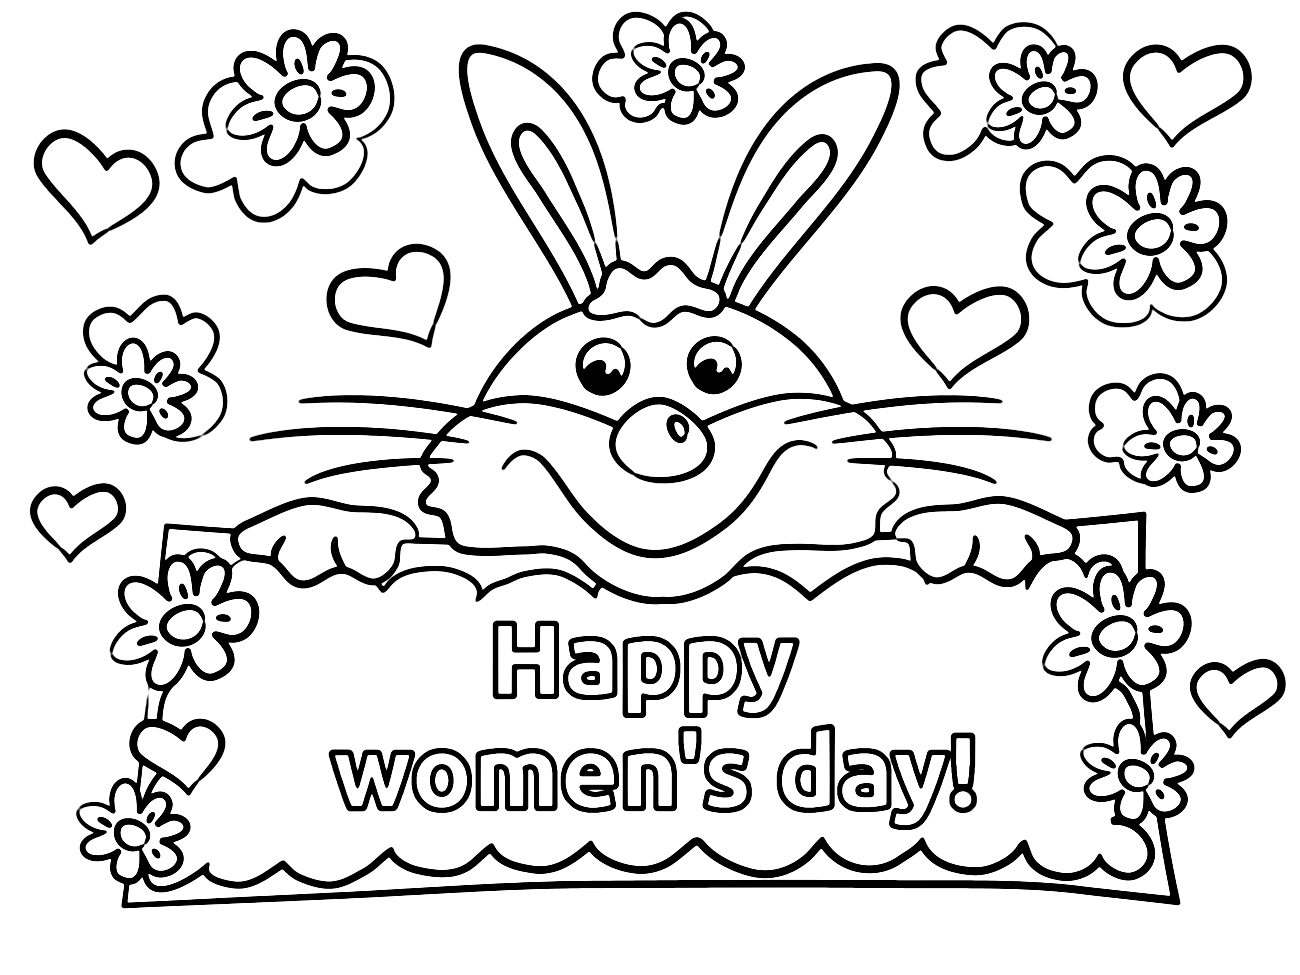 Tarjeta de conejita del Día de la Mujer de Bunny